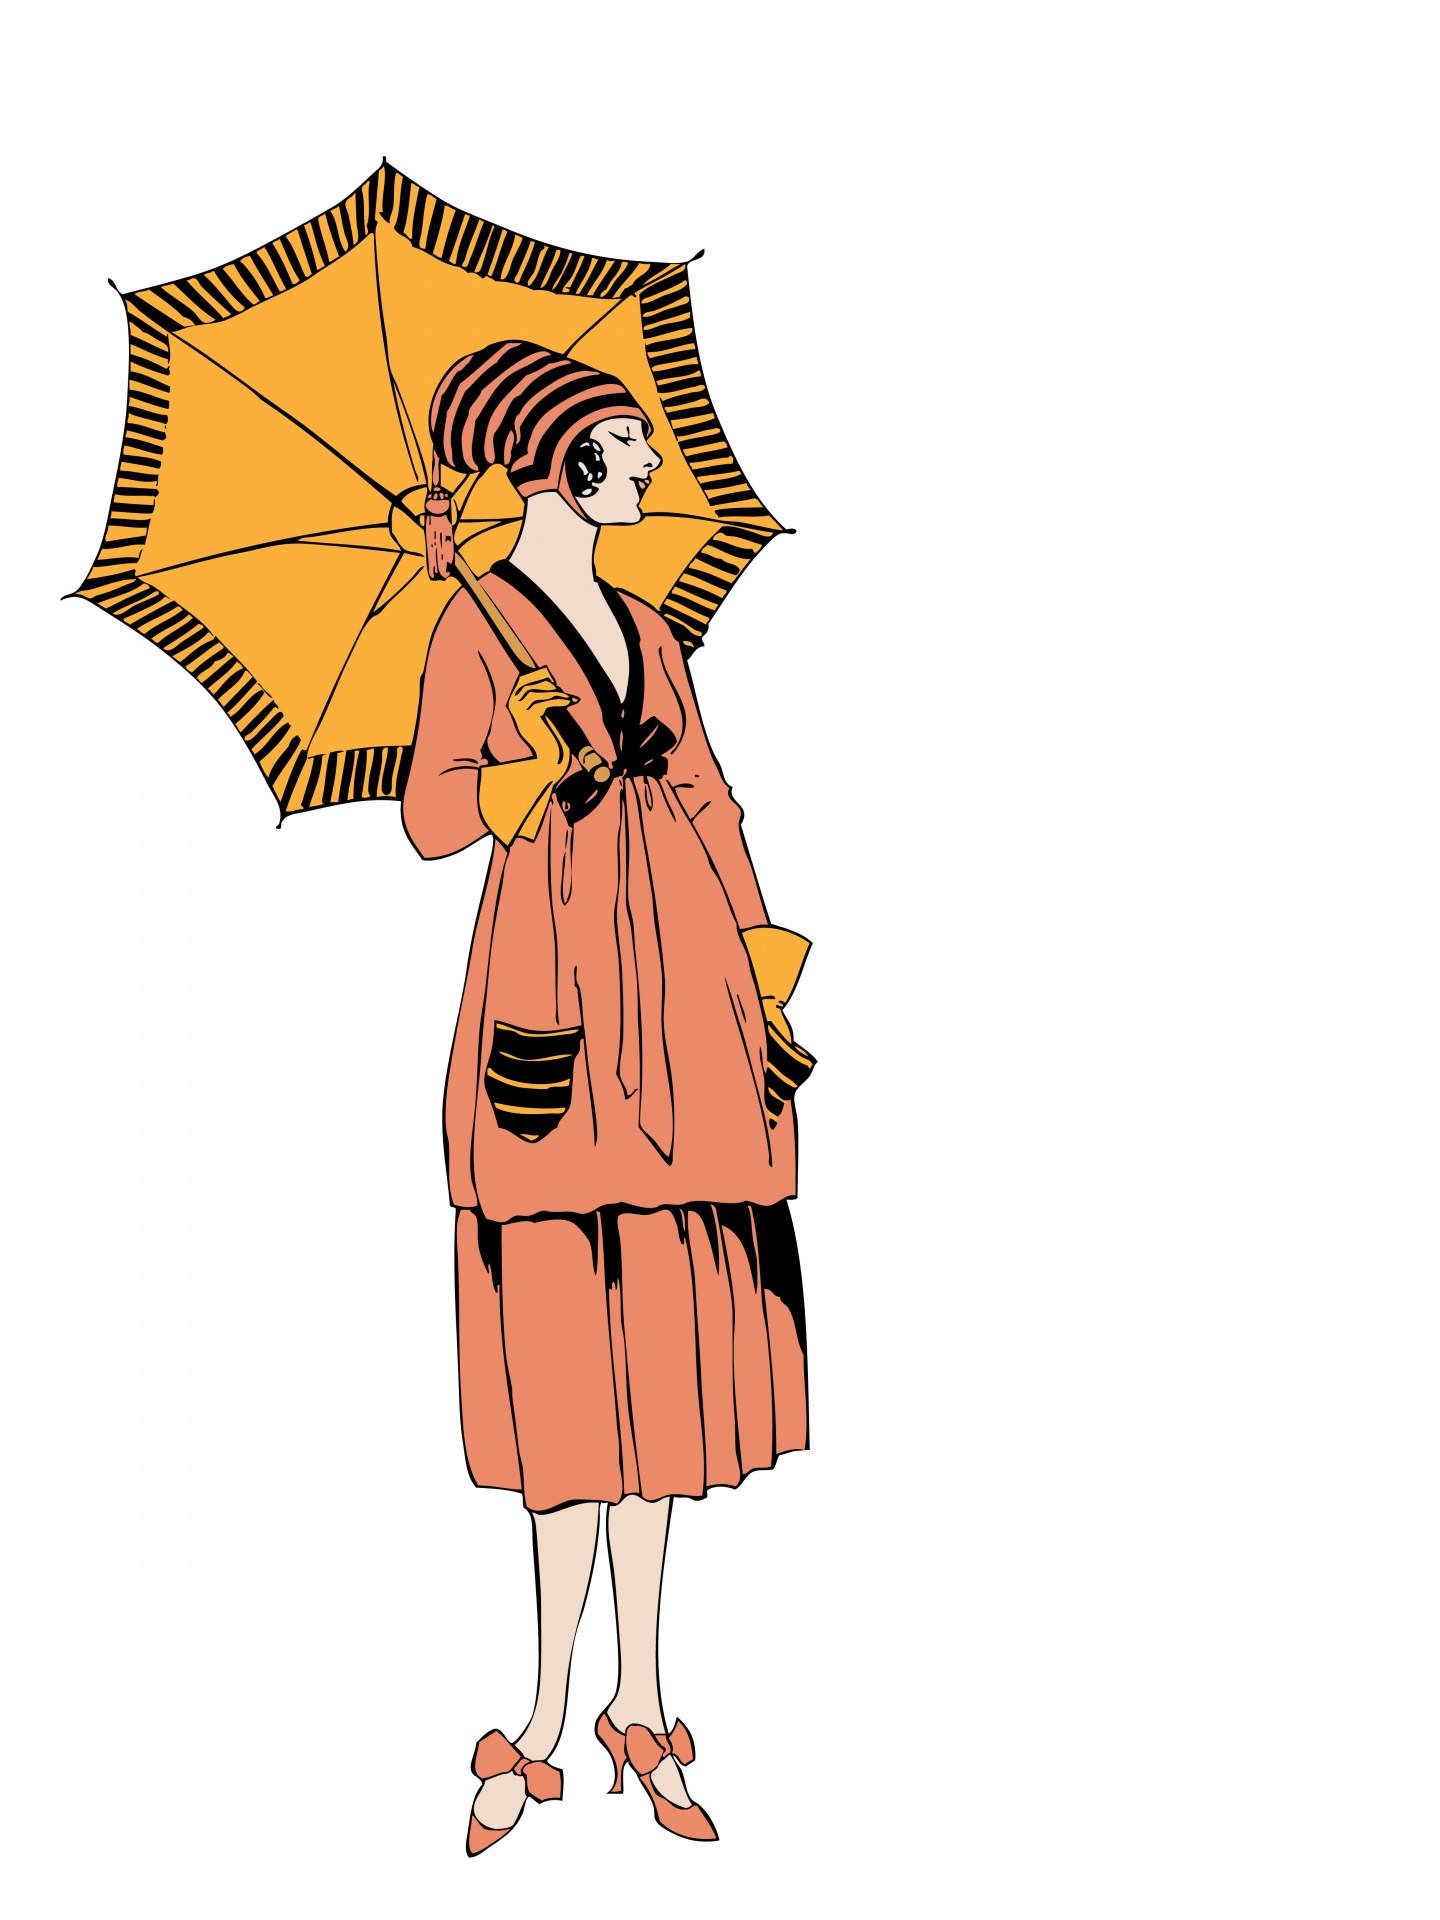 Woman Umbrella Vintage Illustration